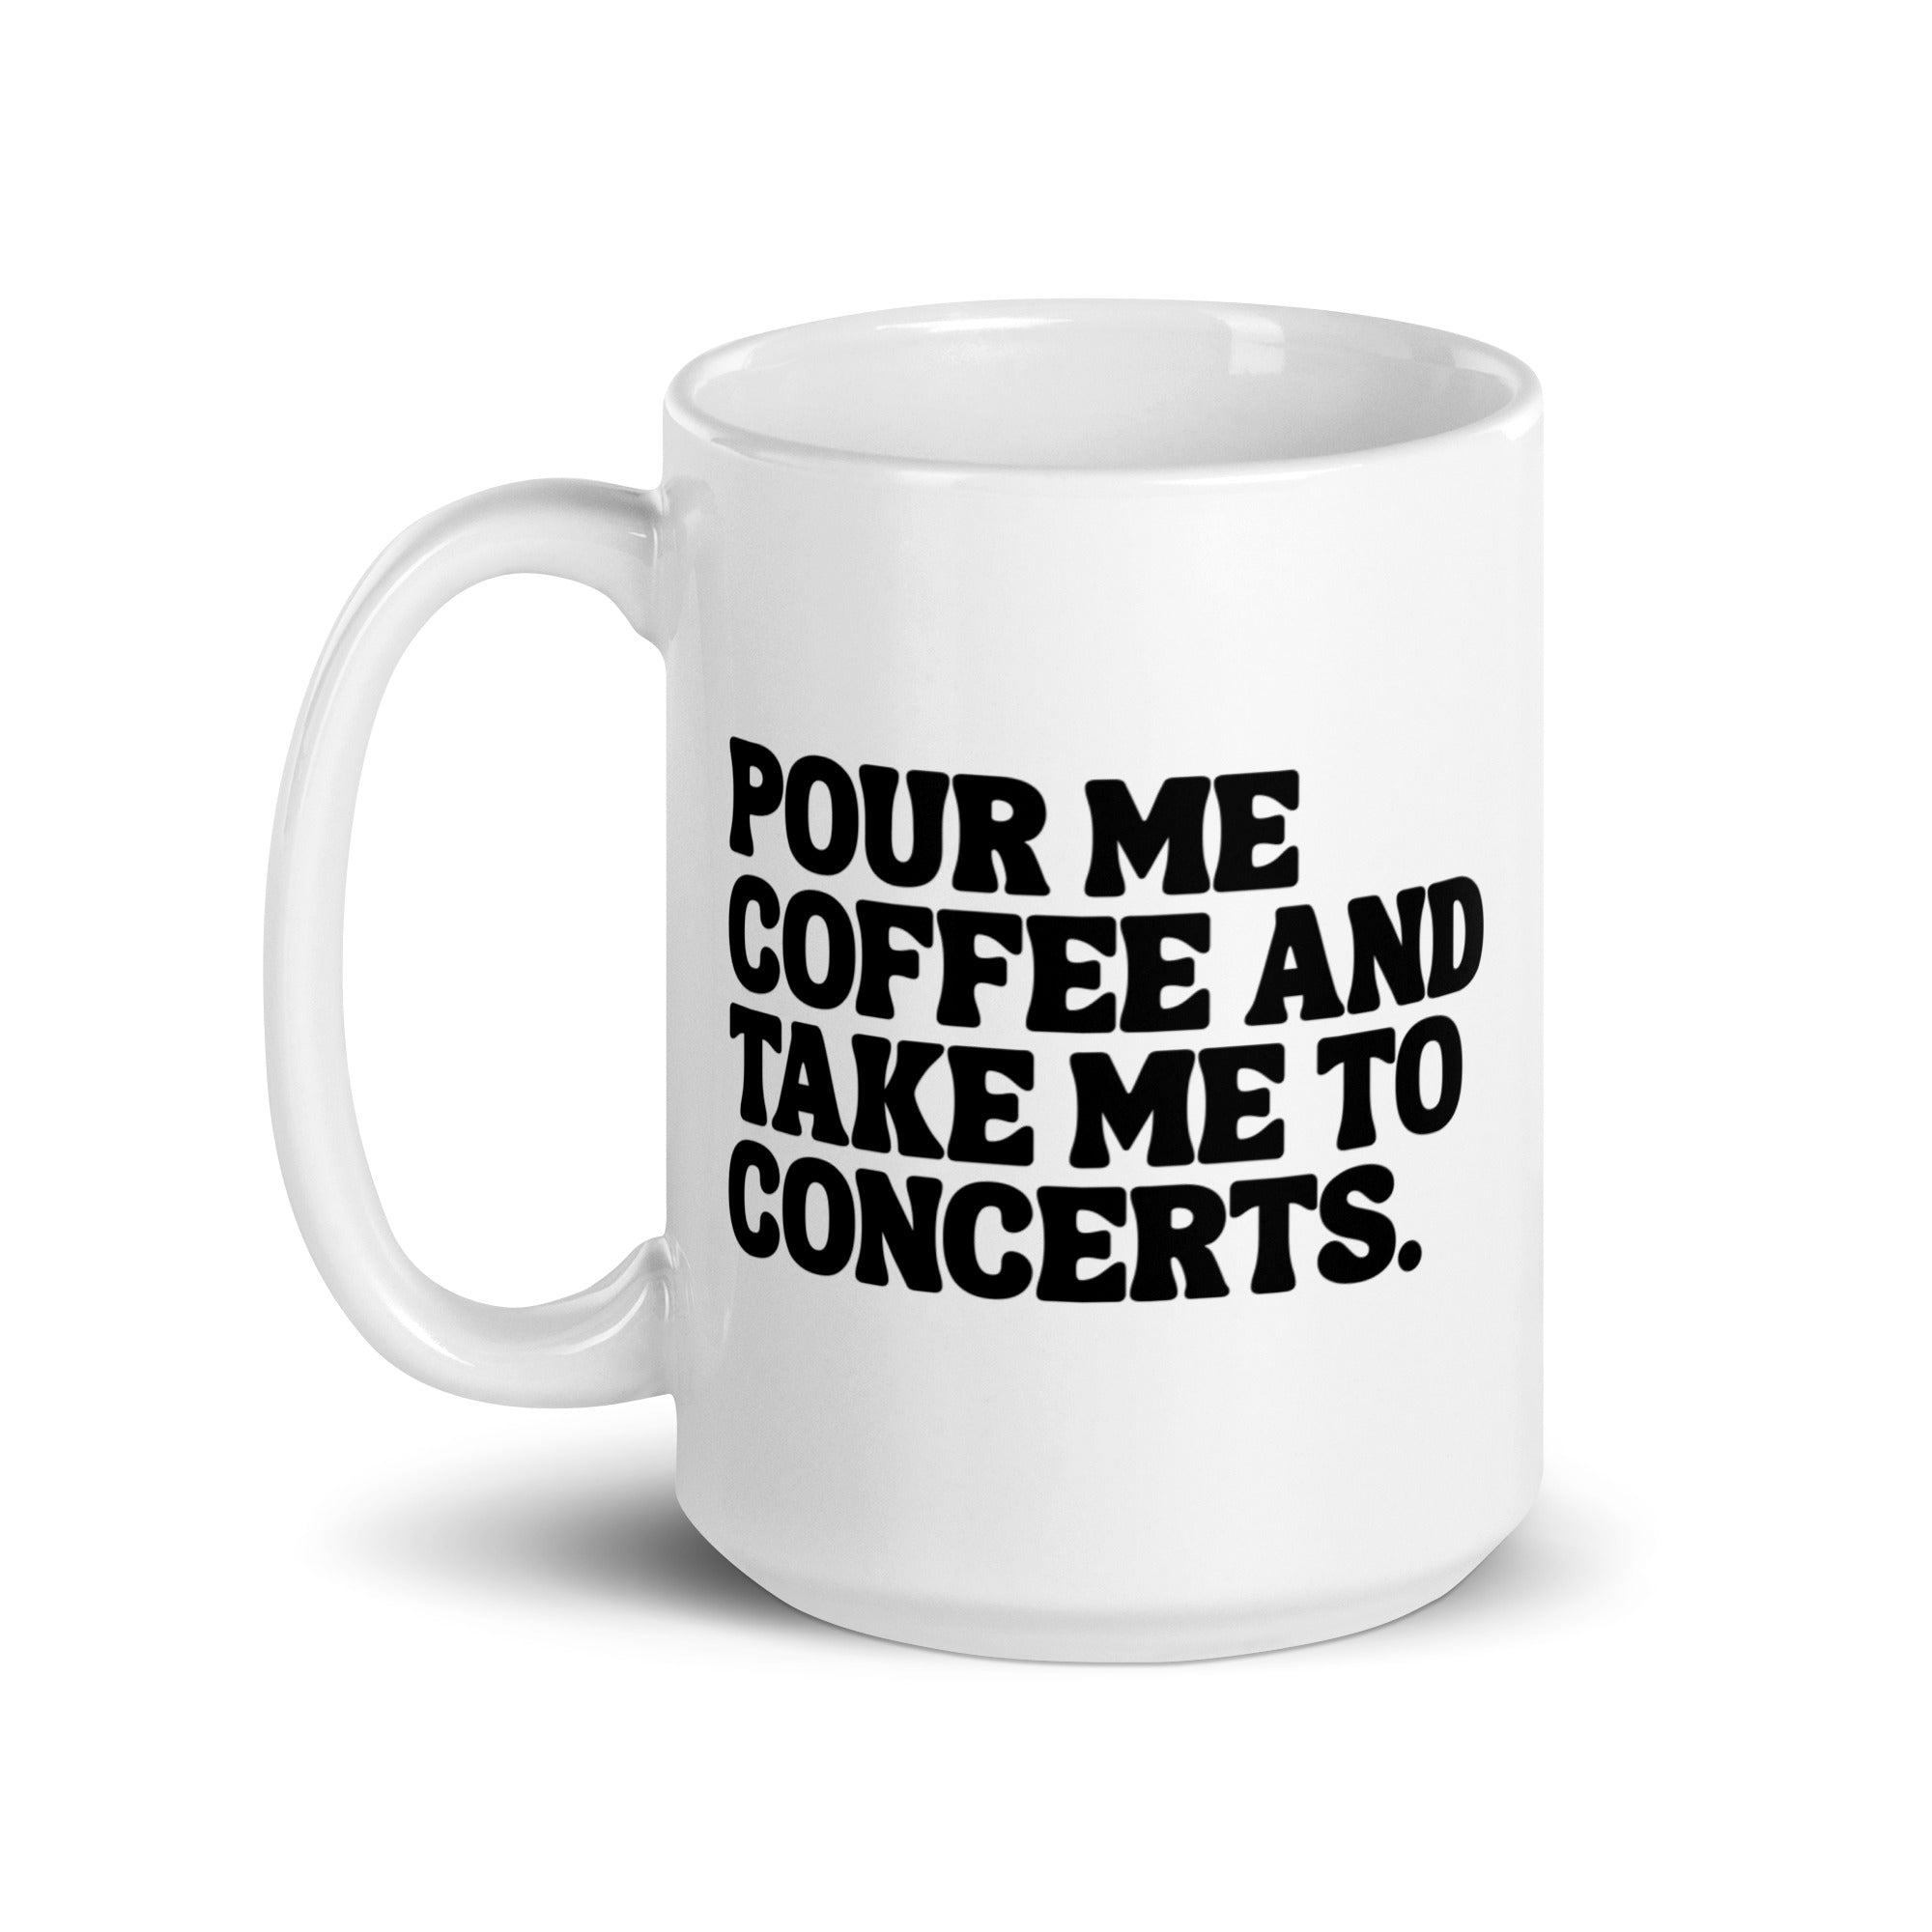 Take me to concerts - Mug